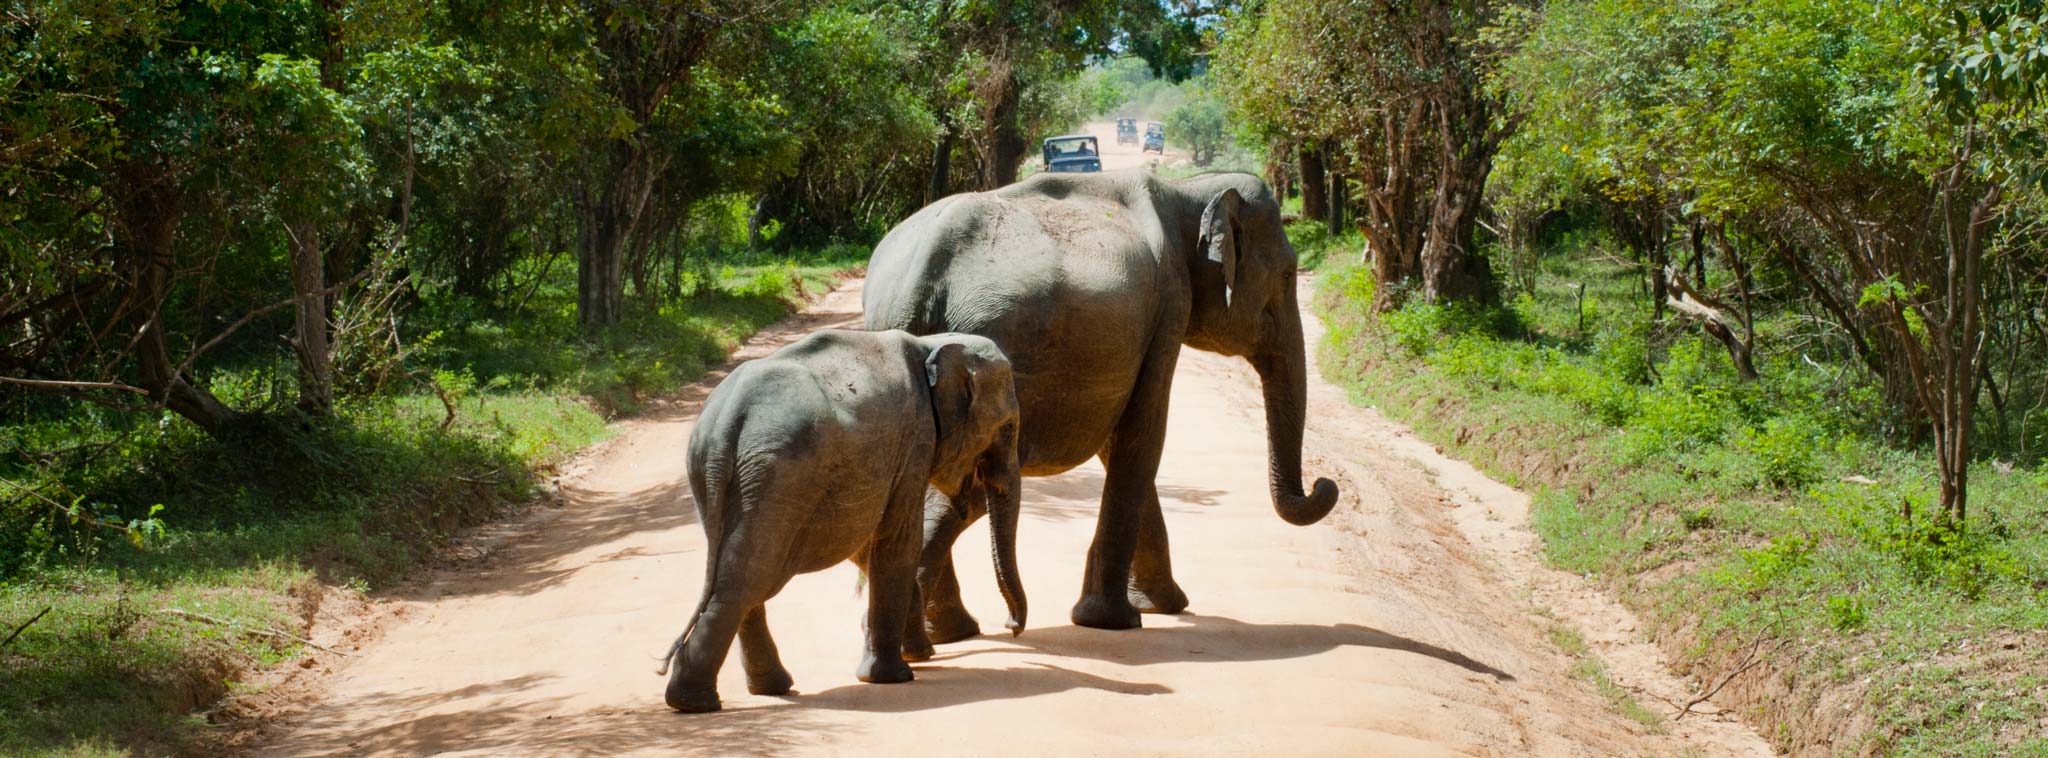 Thợ săn động vật hoang dã chuyên nghiệp bị đè chết bởi một con voi